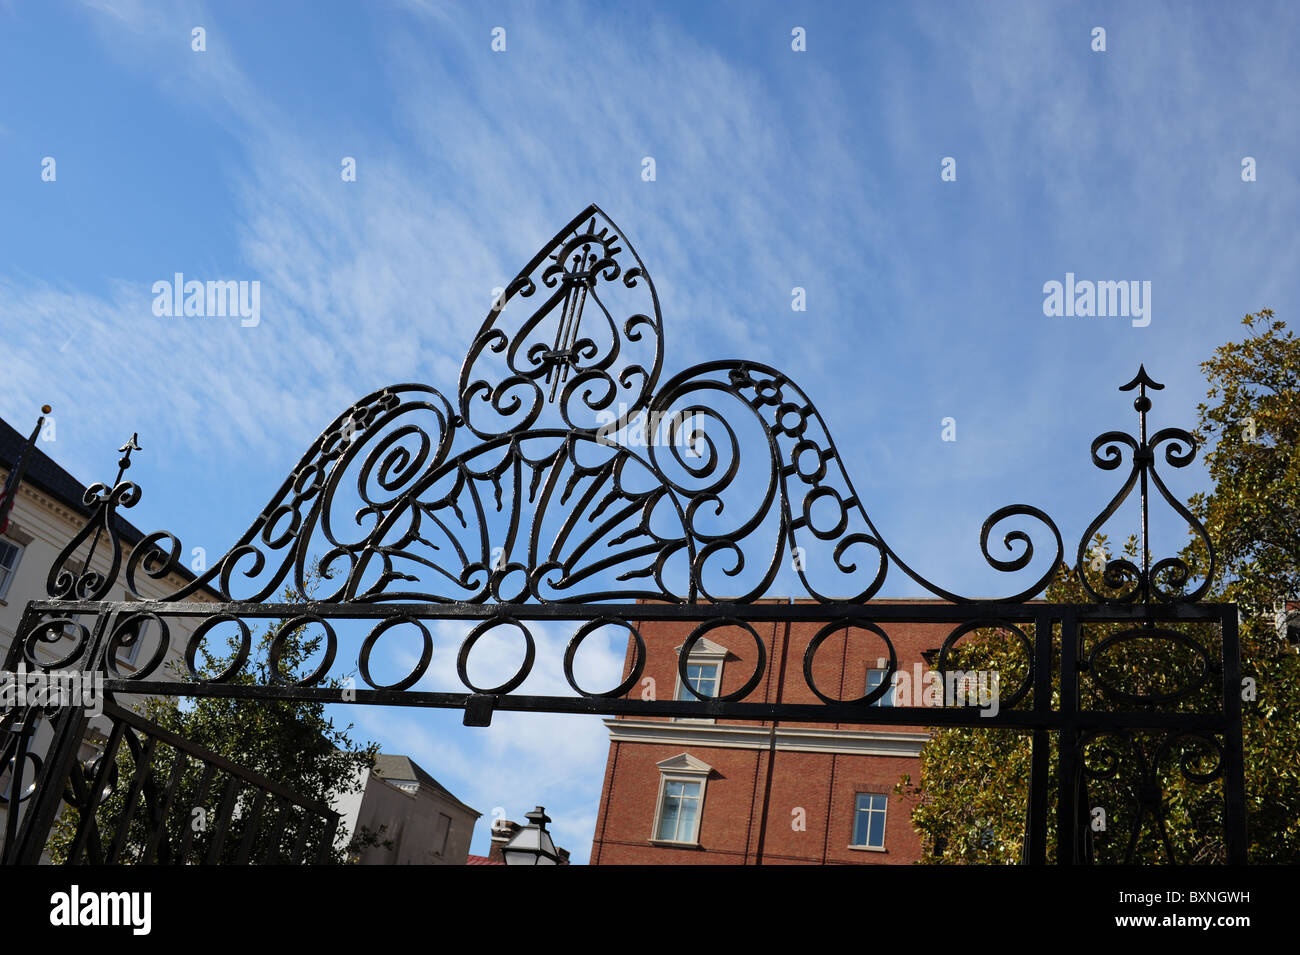 Wrought iron atop gate to Washington Park, Charleston, SC Stock Photo